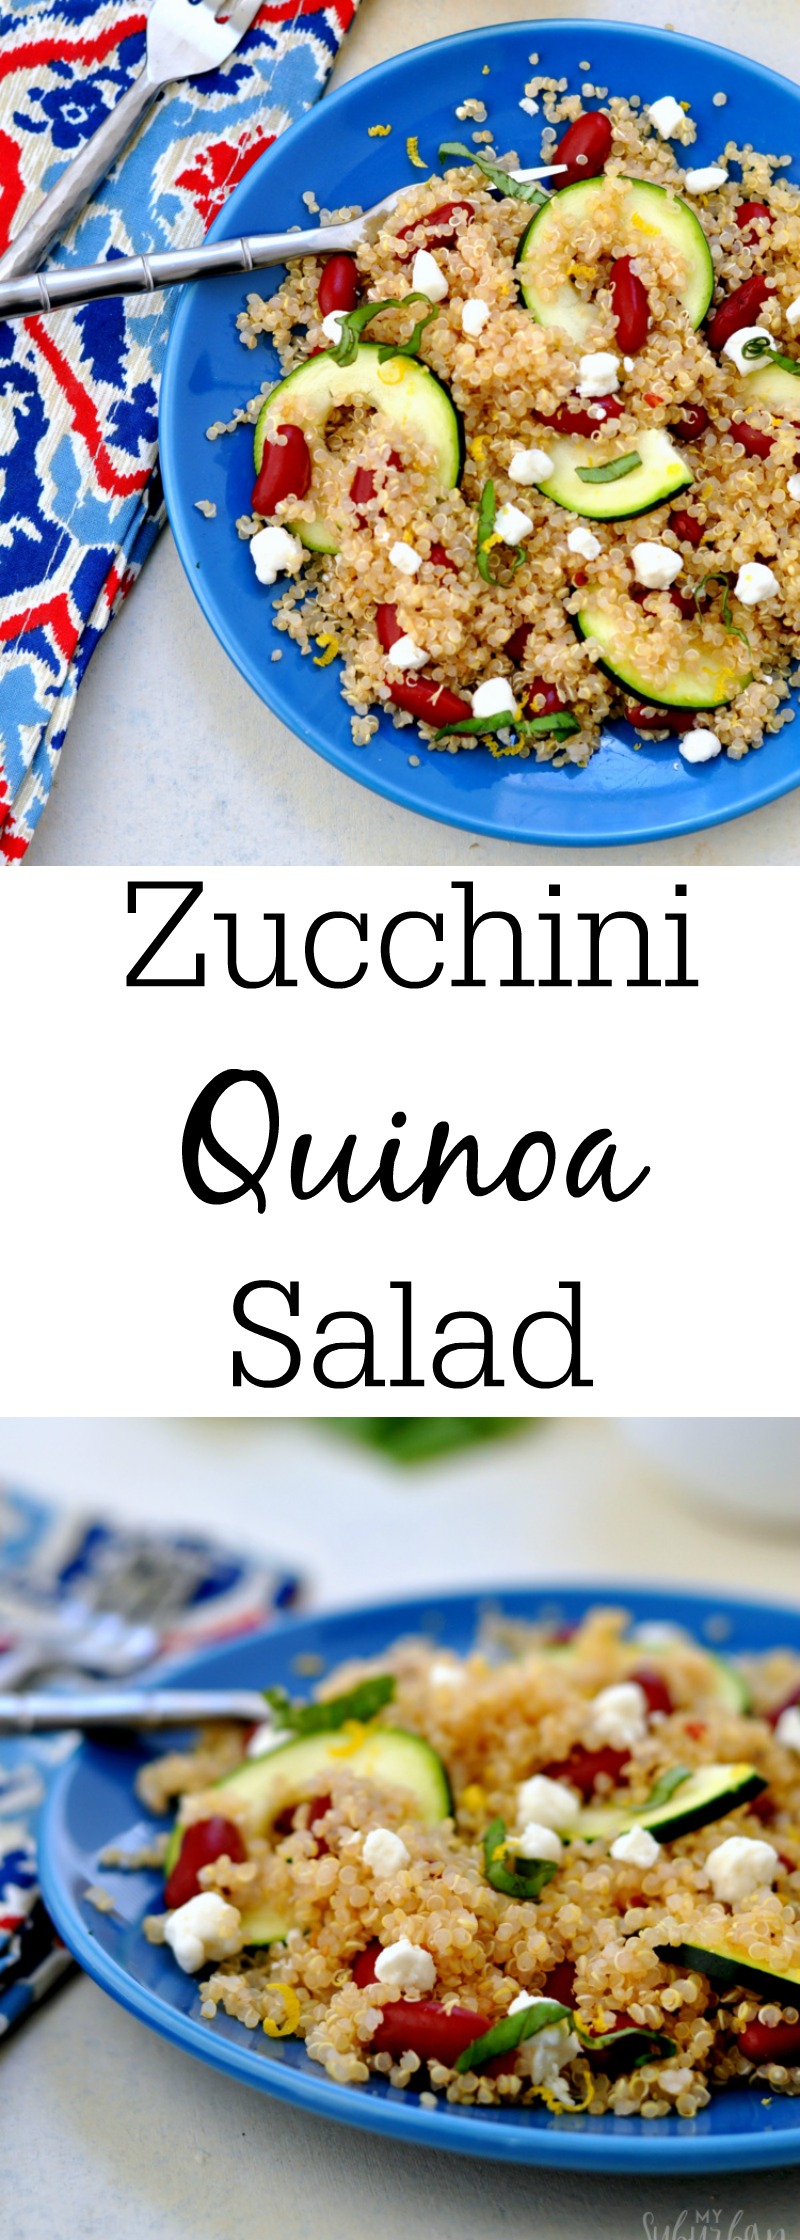 Zucchini Quinoa Salad